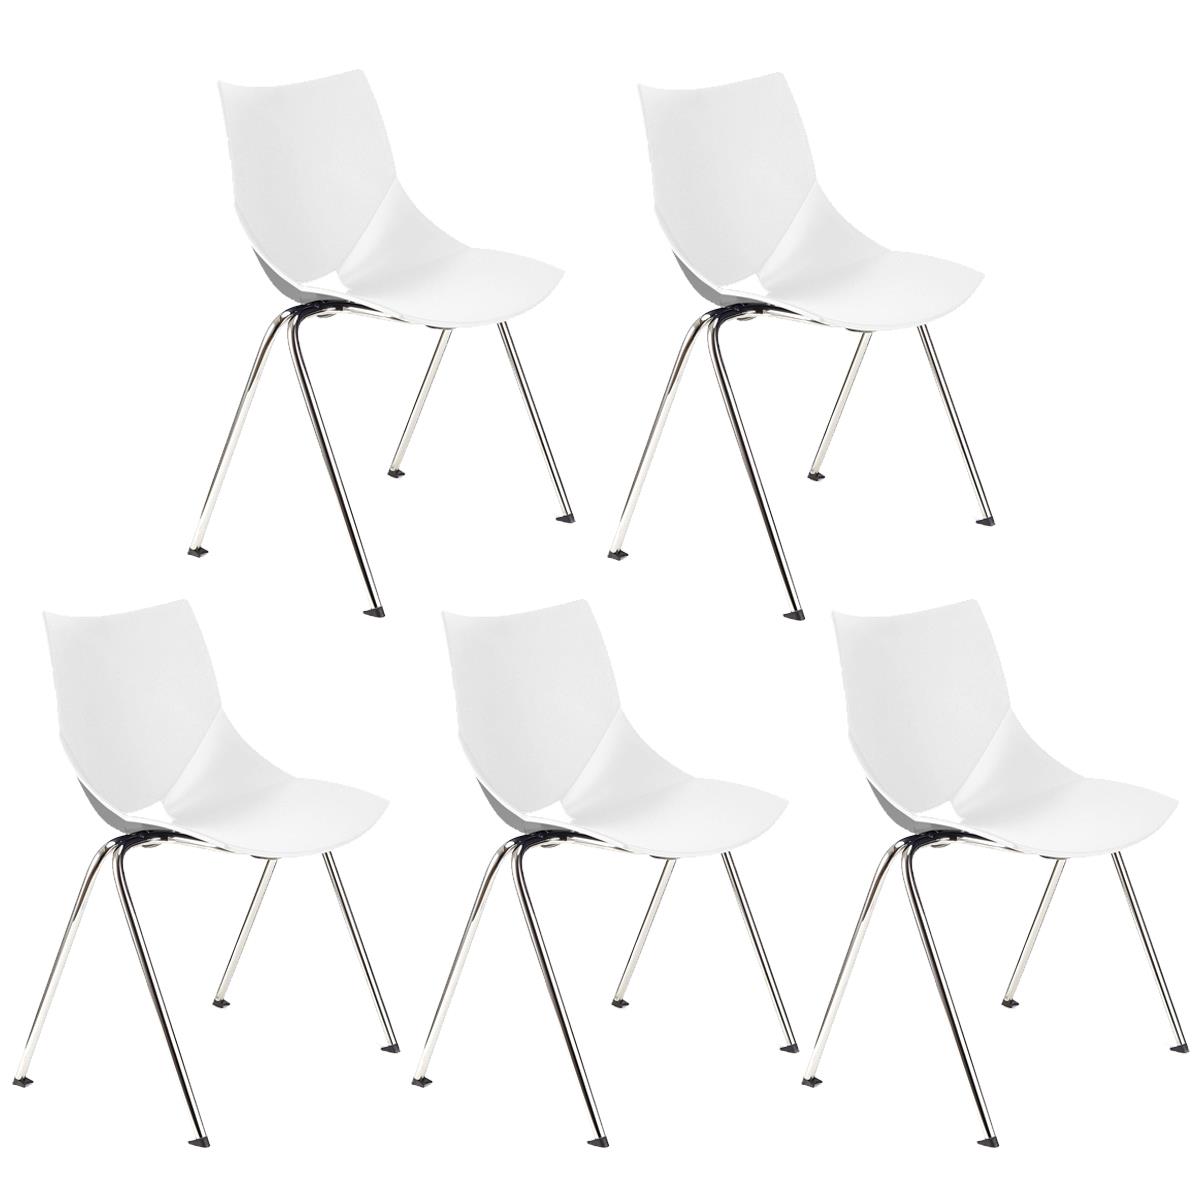 Lote 5 Cadeiras de Visita AMIR, Confortável e Prática, Empilhável, Cor Branco